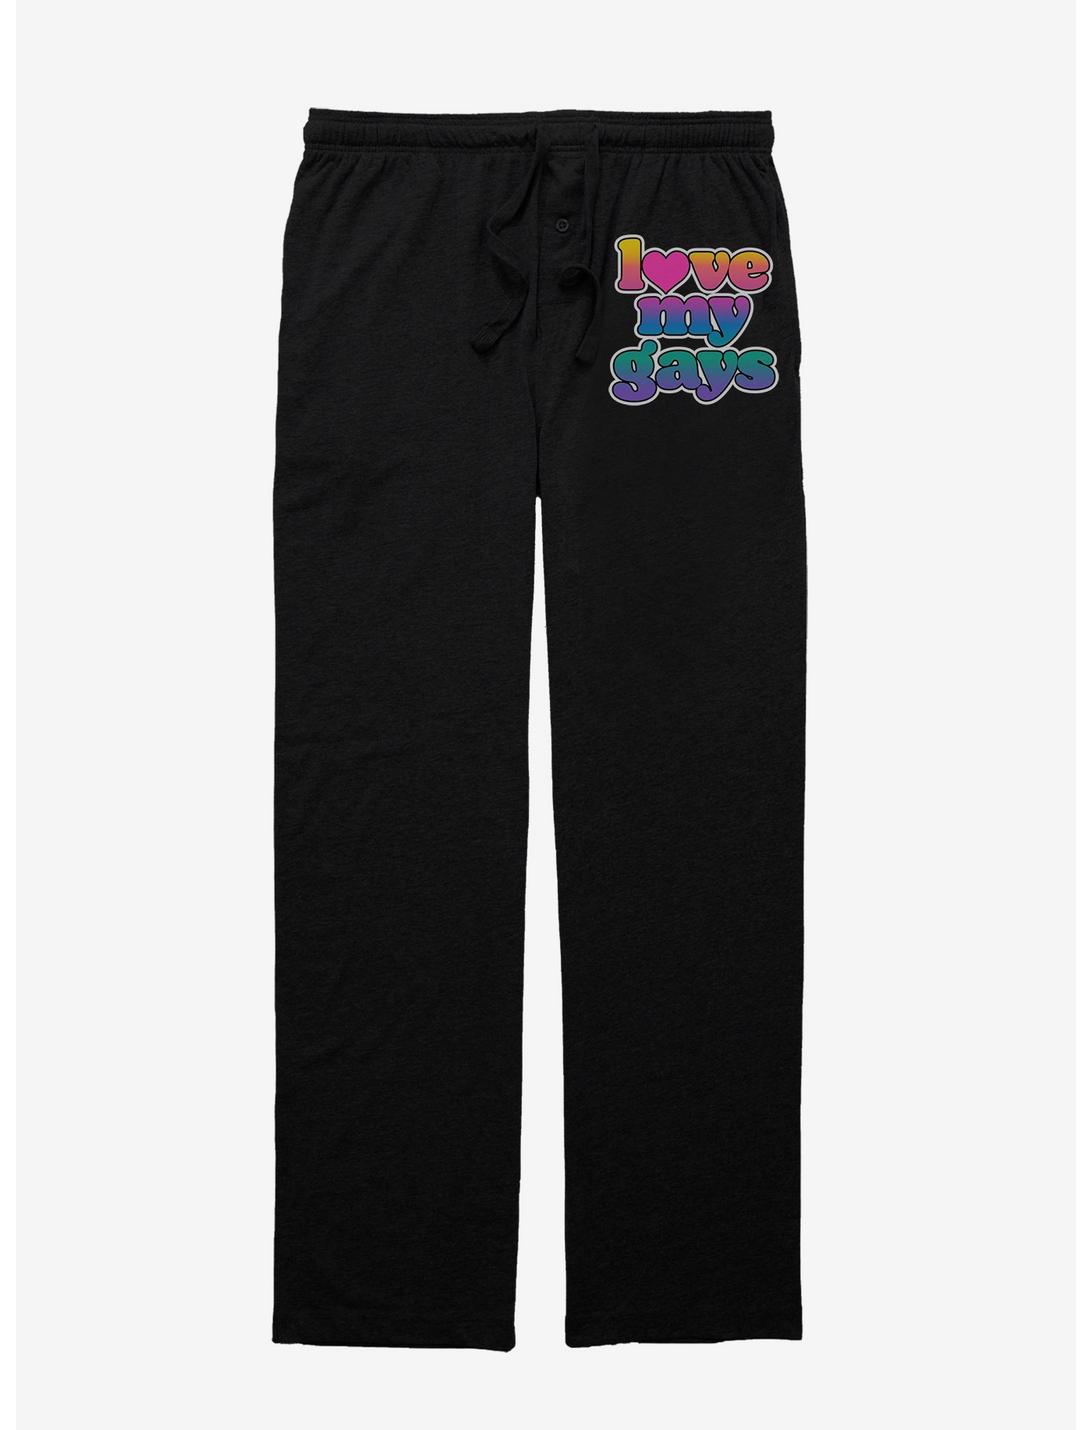 Love My Gays Pajama Pants, BLACK, hi-res